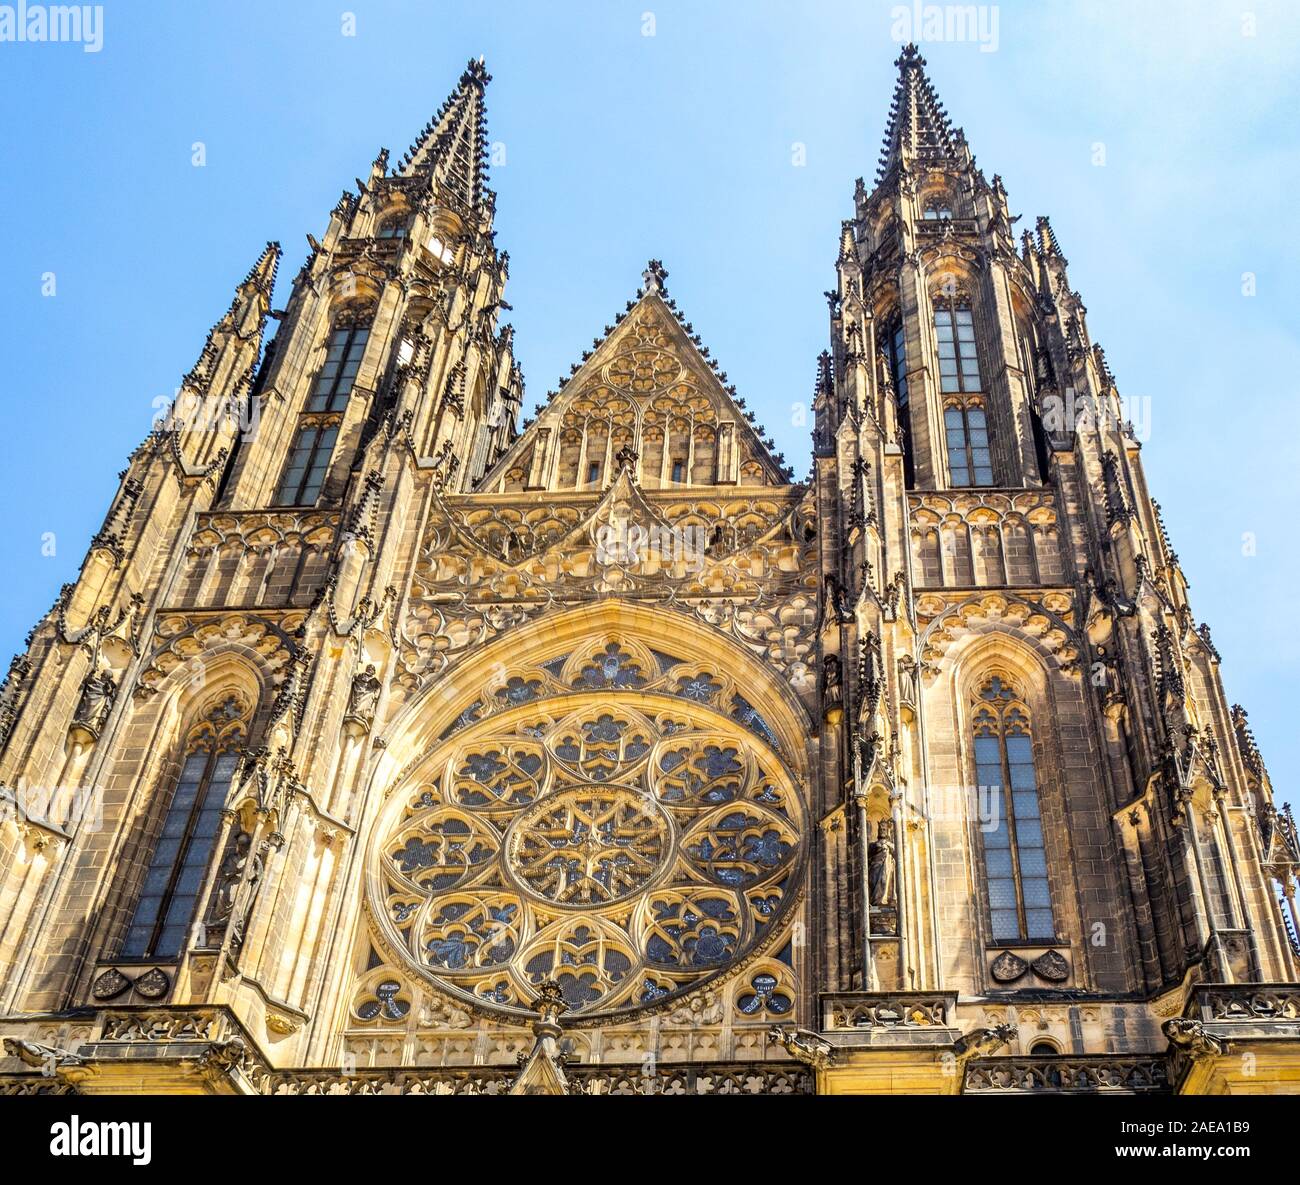 Gotische Fassade Kirchtürme Rosette Fenster der St. Veits Kathedrale Prager Burg Komplex Prag Tschechische Republik. Stockfoto